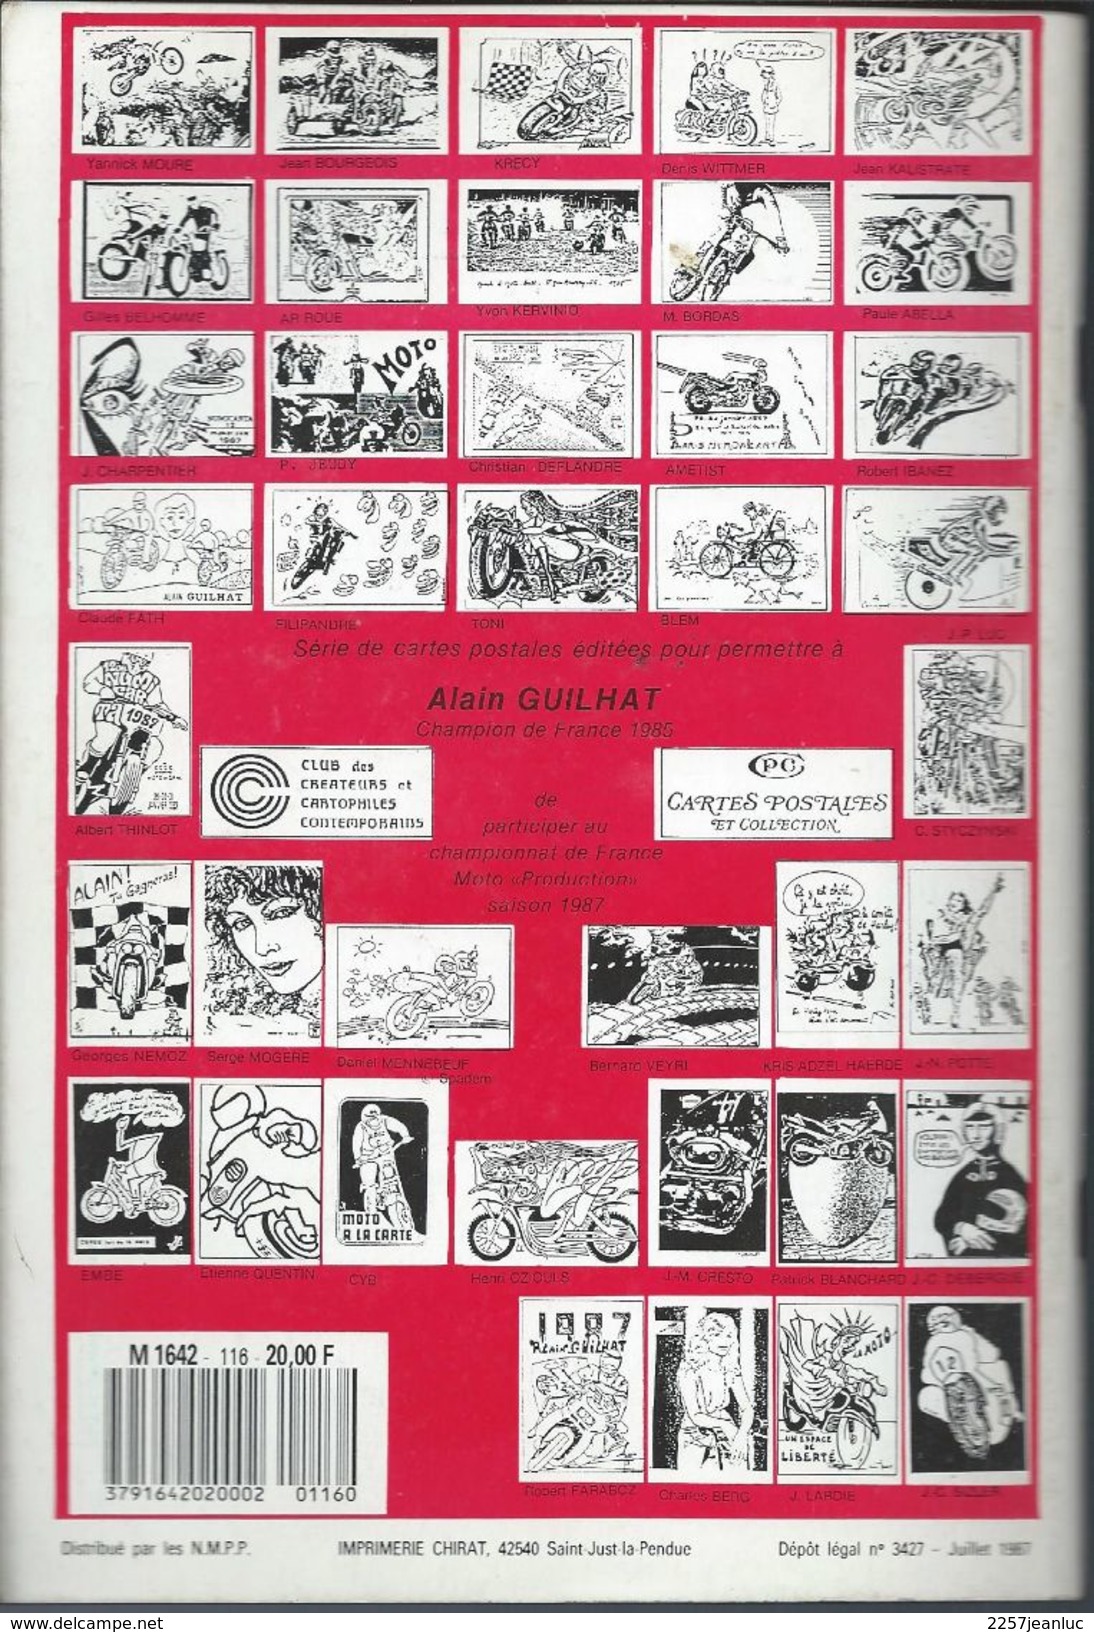 Cartes Postales Et Collections Aout 1987  Magazines N: 116 Llustration &  Thèmes Divers 100 Pages - Français